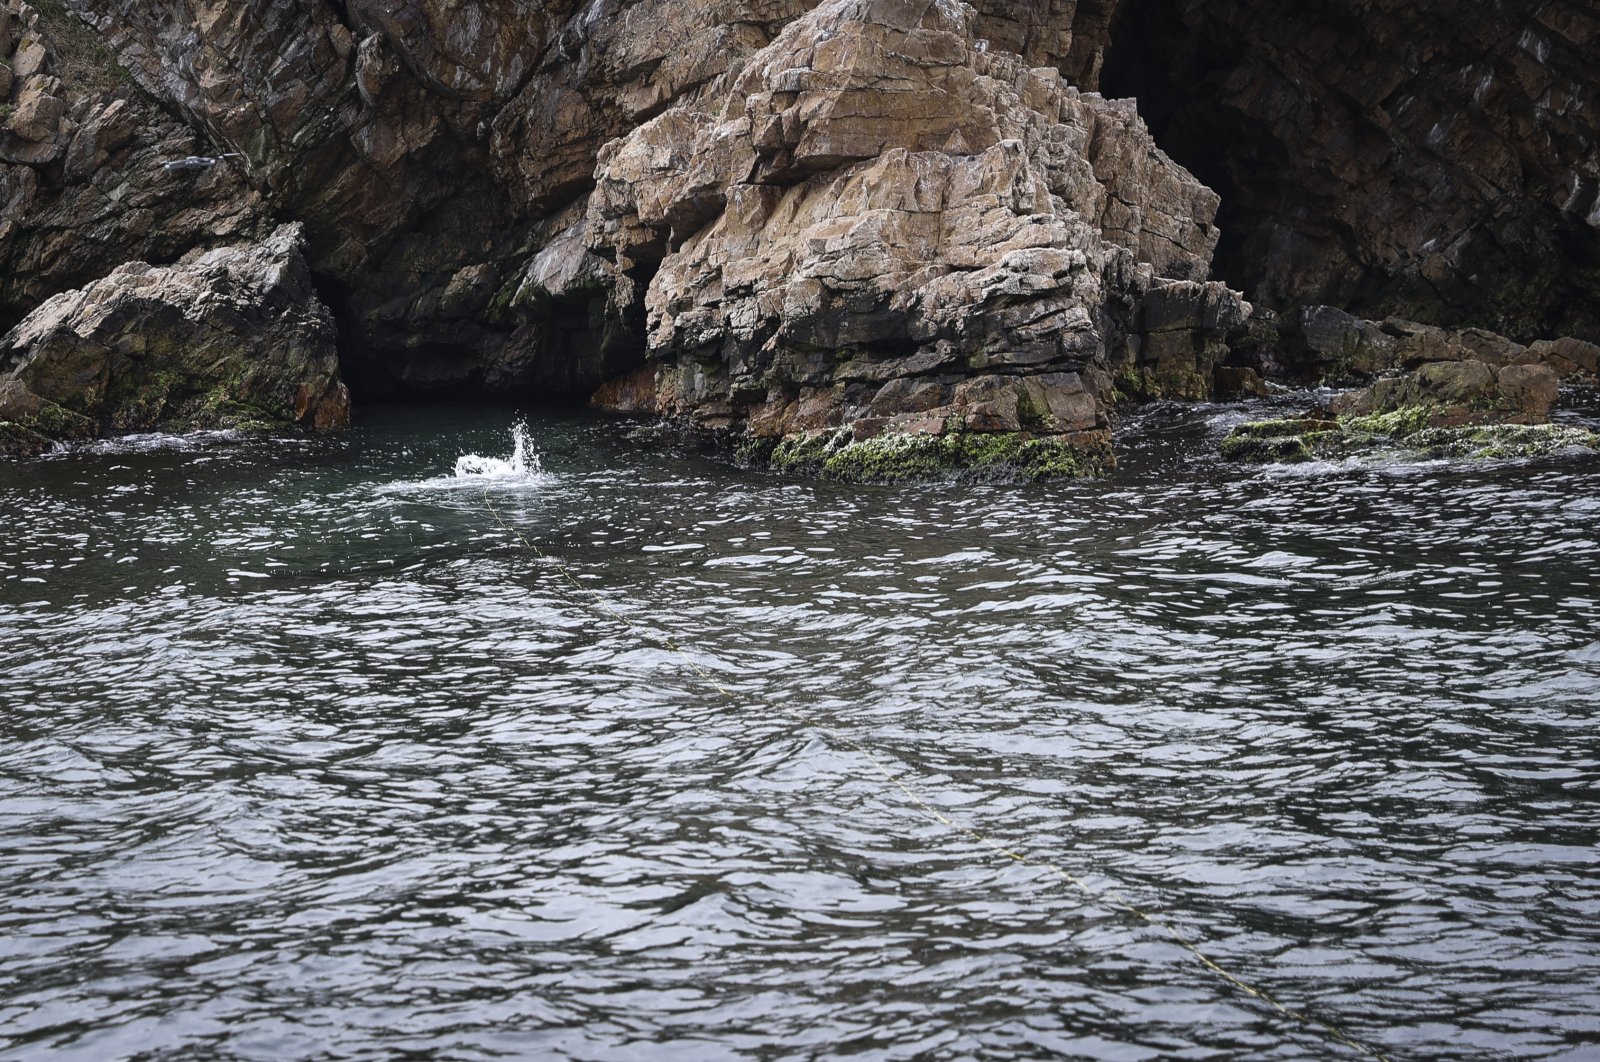 Habitat langka anjing laut biksu Med ditemukan di pulau Istanbul